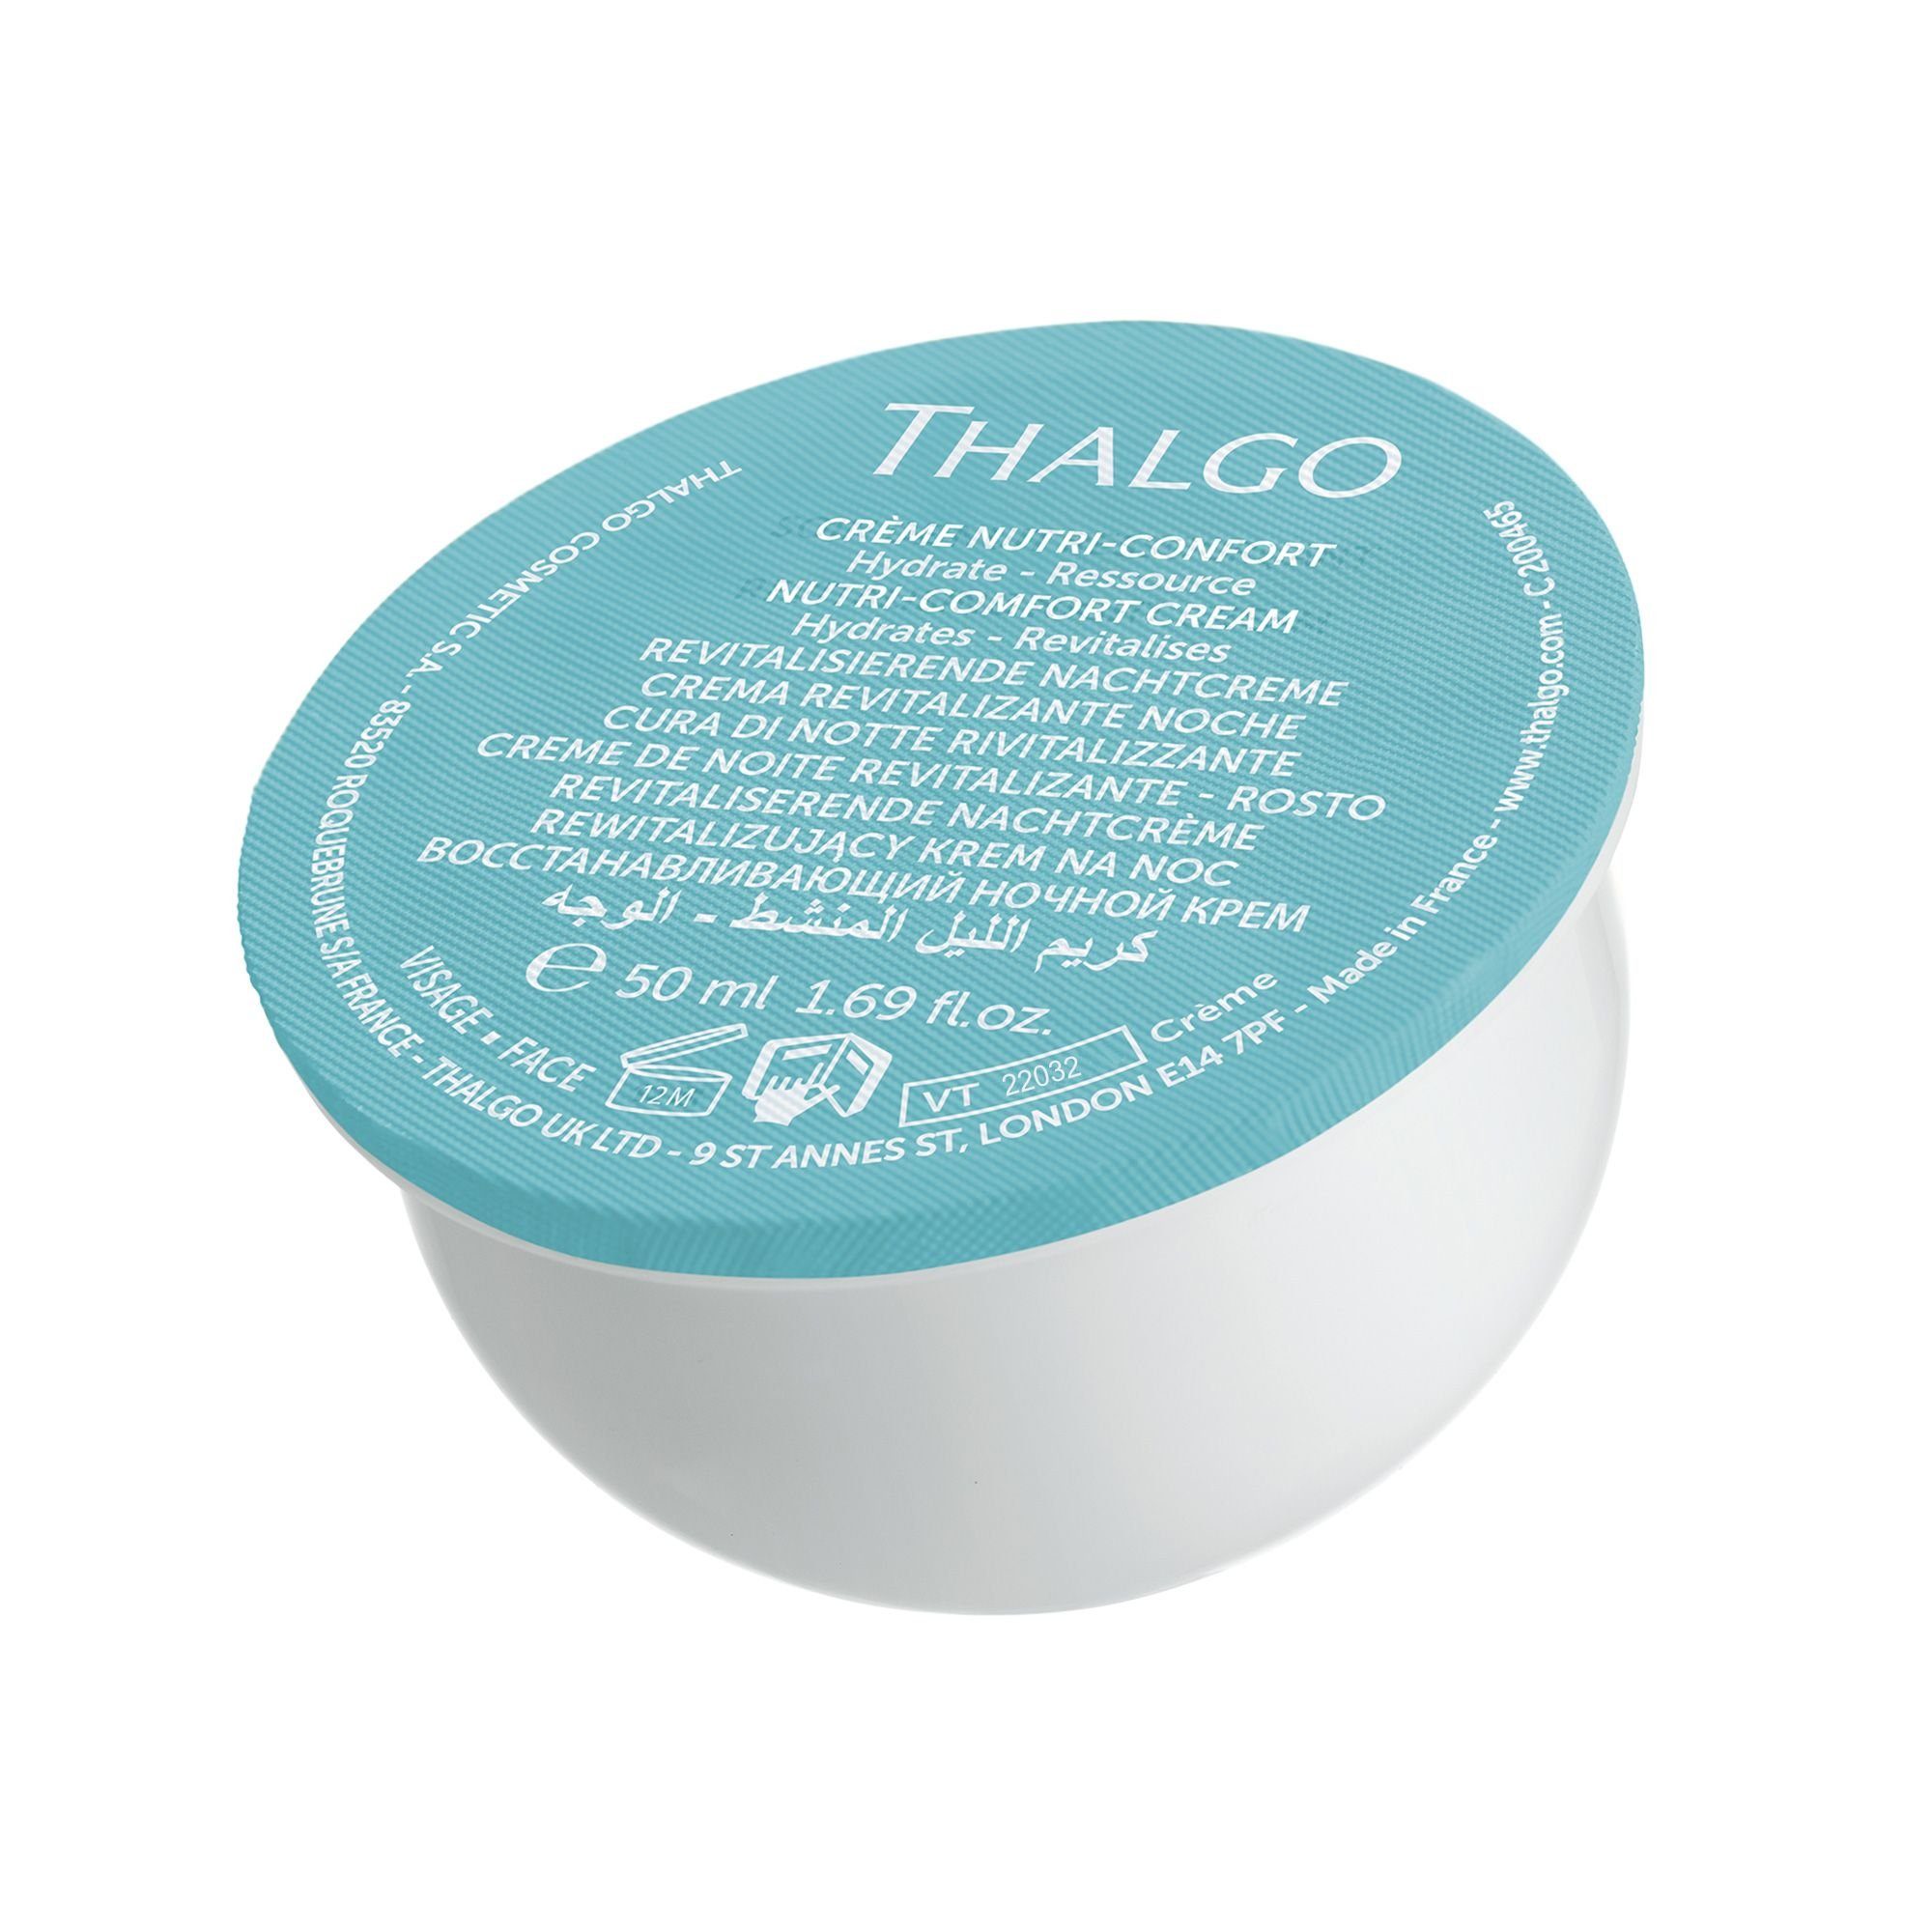 Refill trockene THALGO 50ml Schutz Haut, Sanfte für Nutri-Comfort-Creme, Anti-Aging-Creme